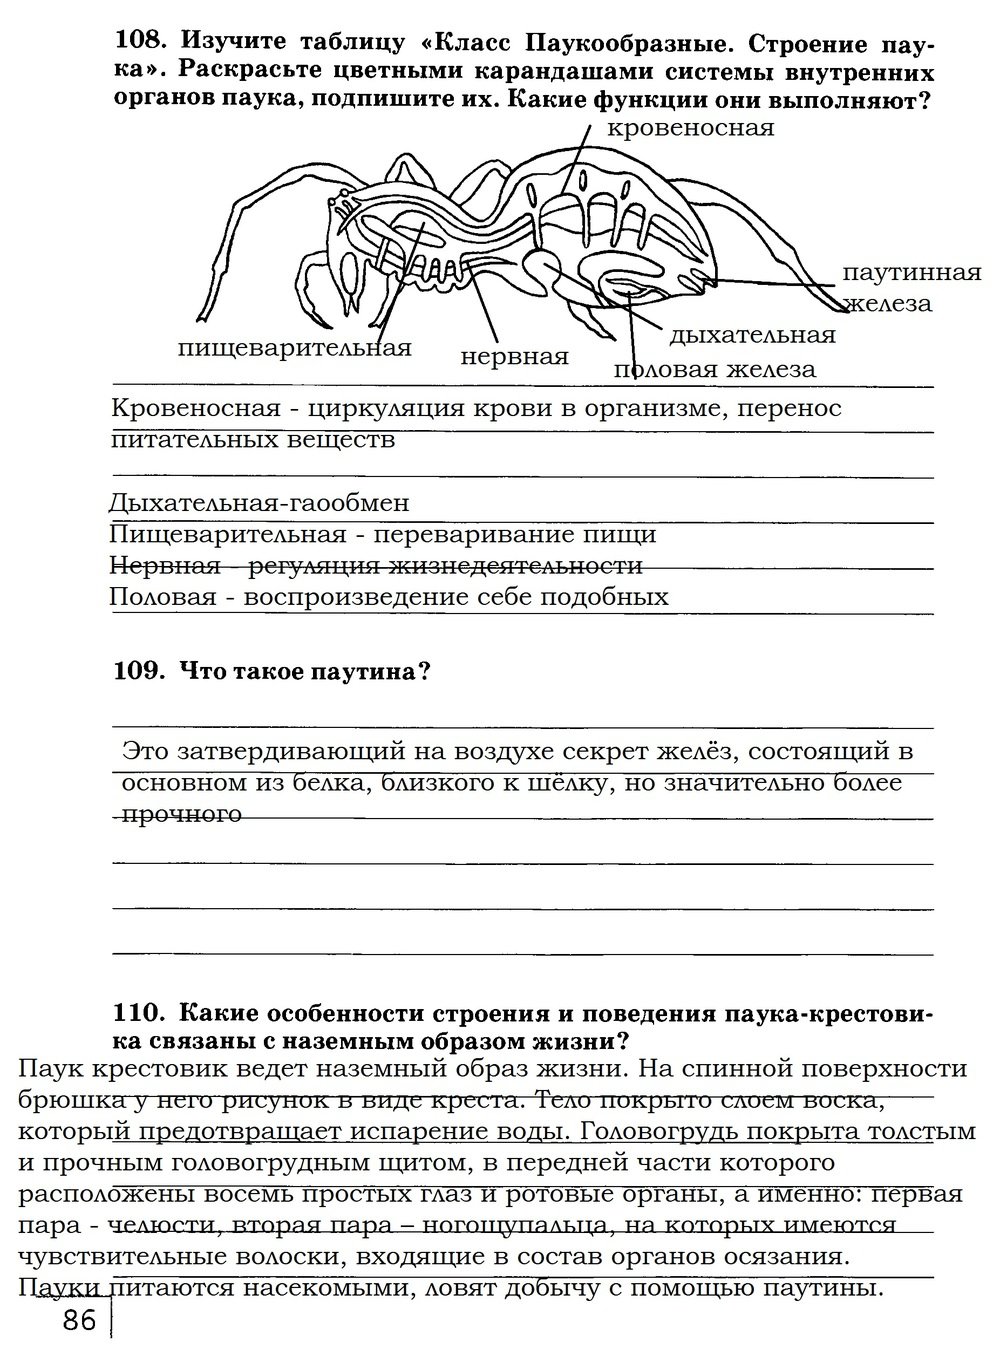 гдз 7 класс рабочая тетрадь страница 86 биология Захаров, Сонин